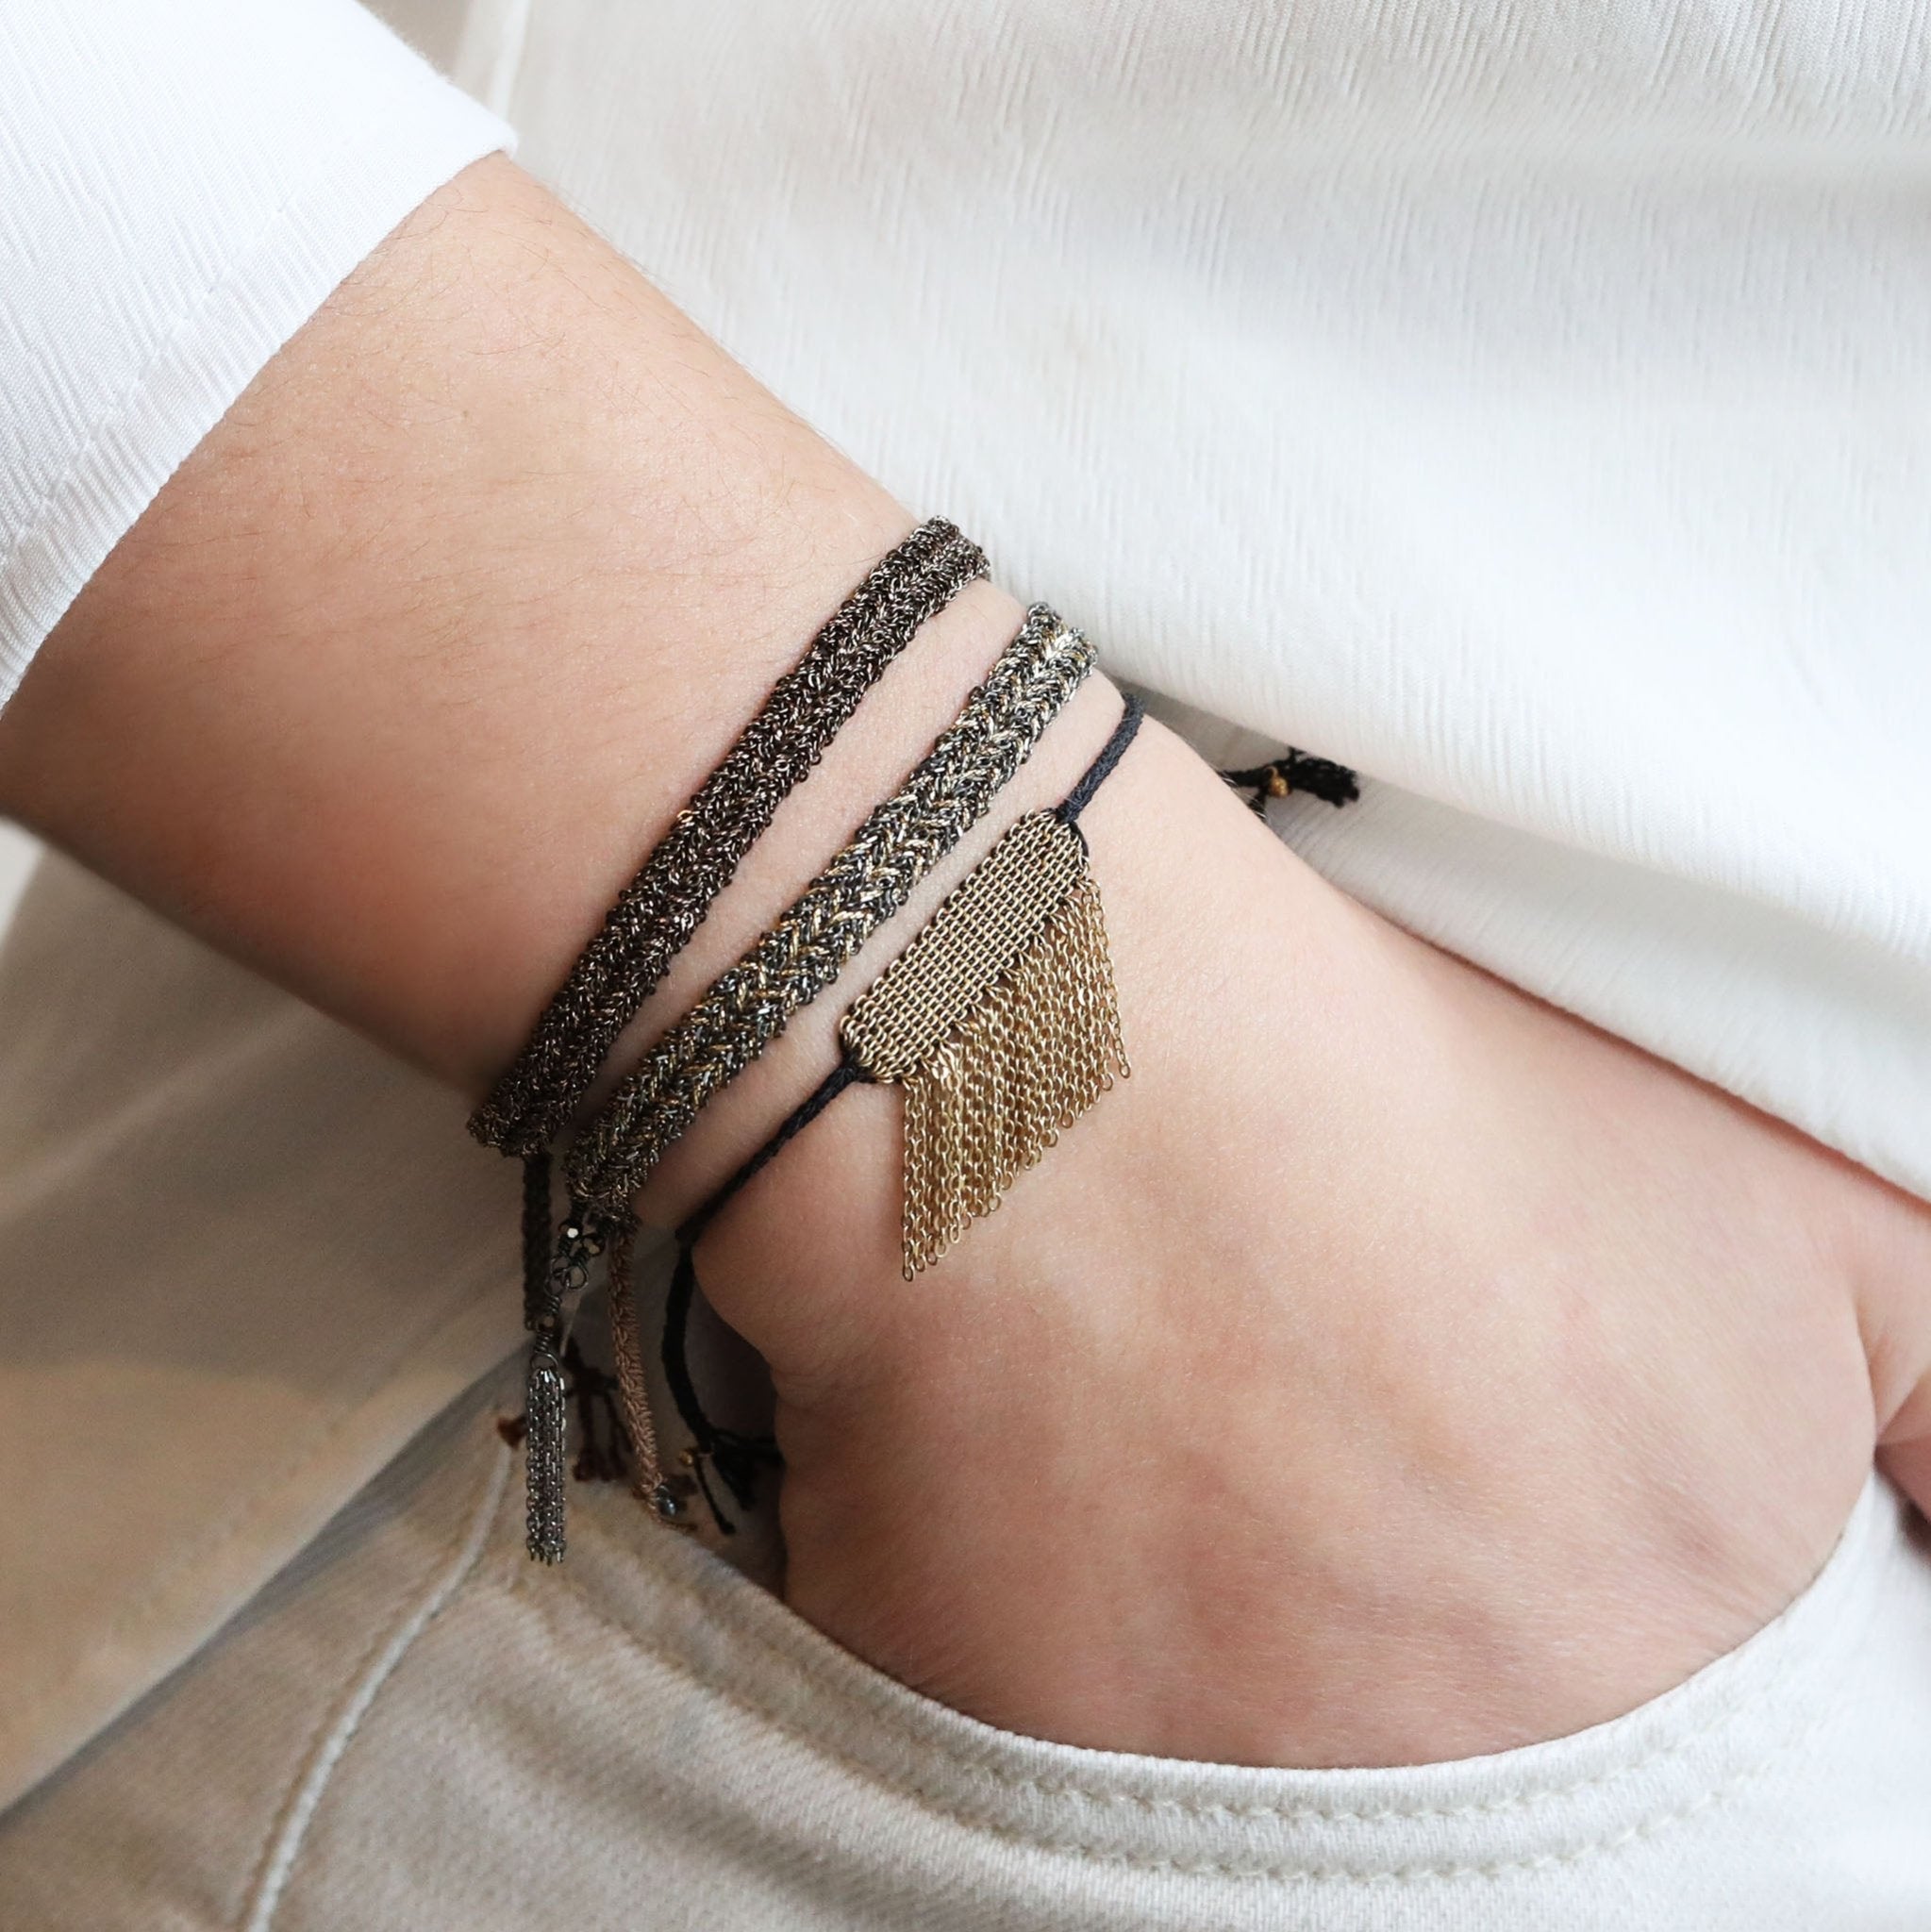 DIY Bracelet: Cross Style Chain Woven Bracelet - YesMissy